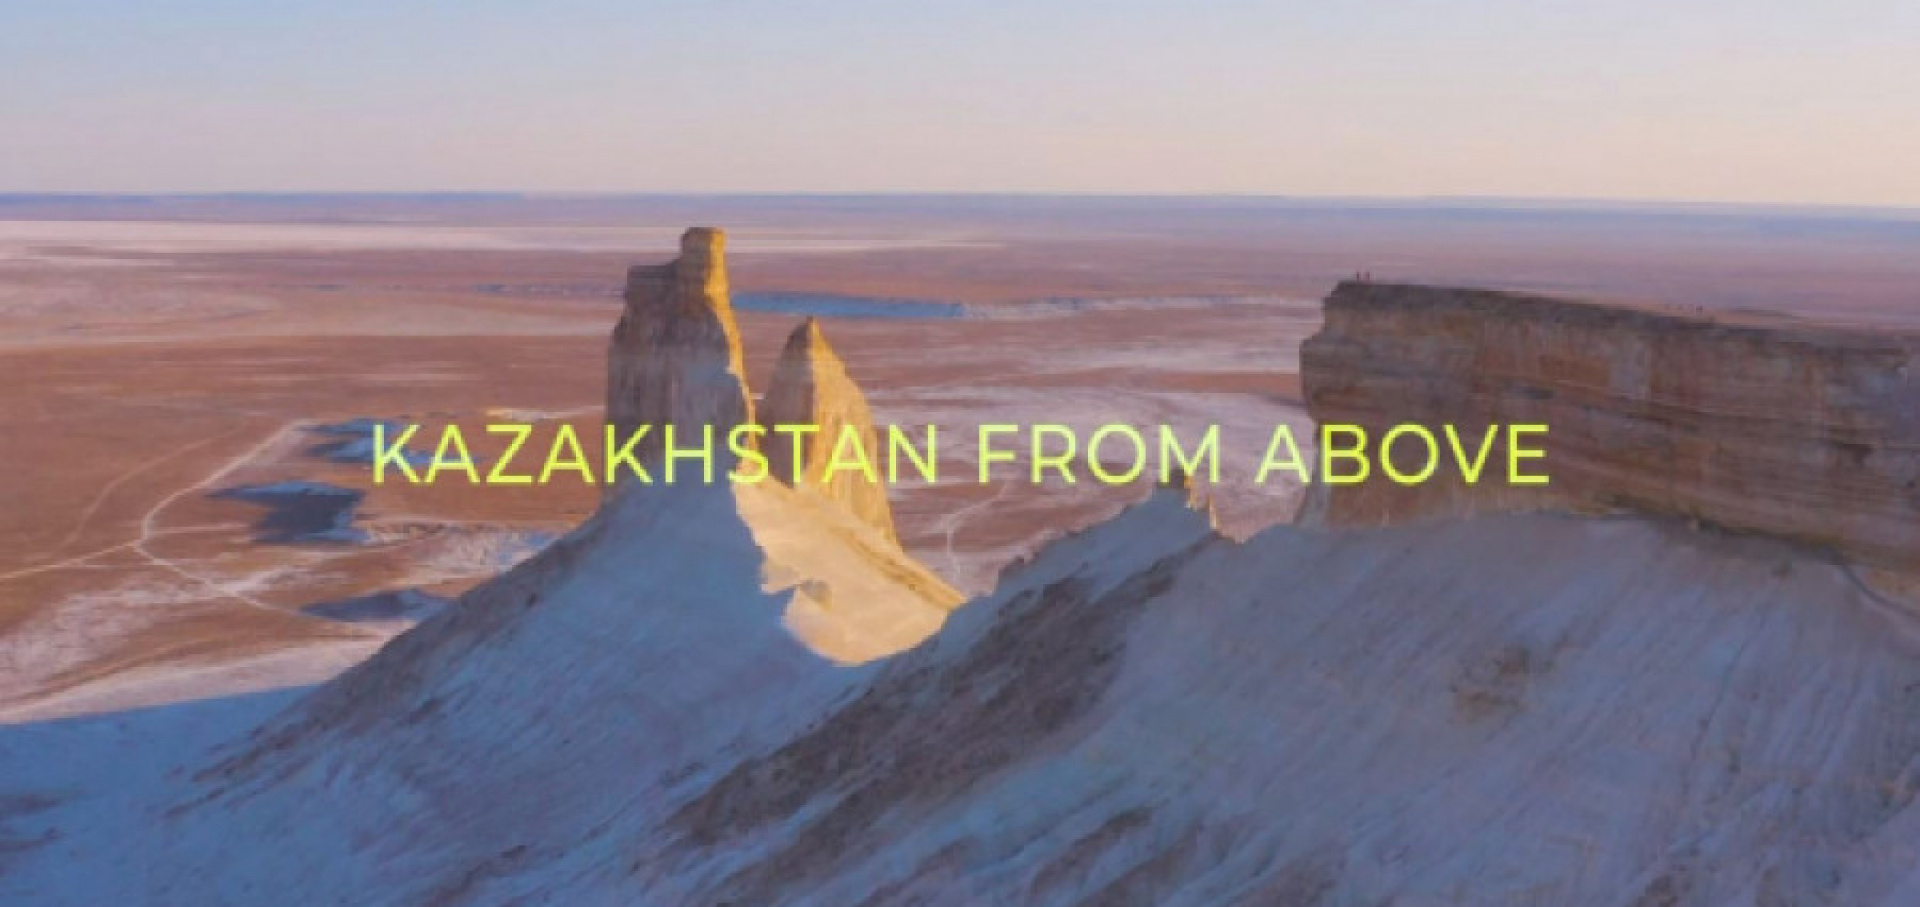 Казахстан: воздушные прогулки